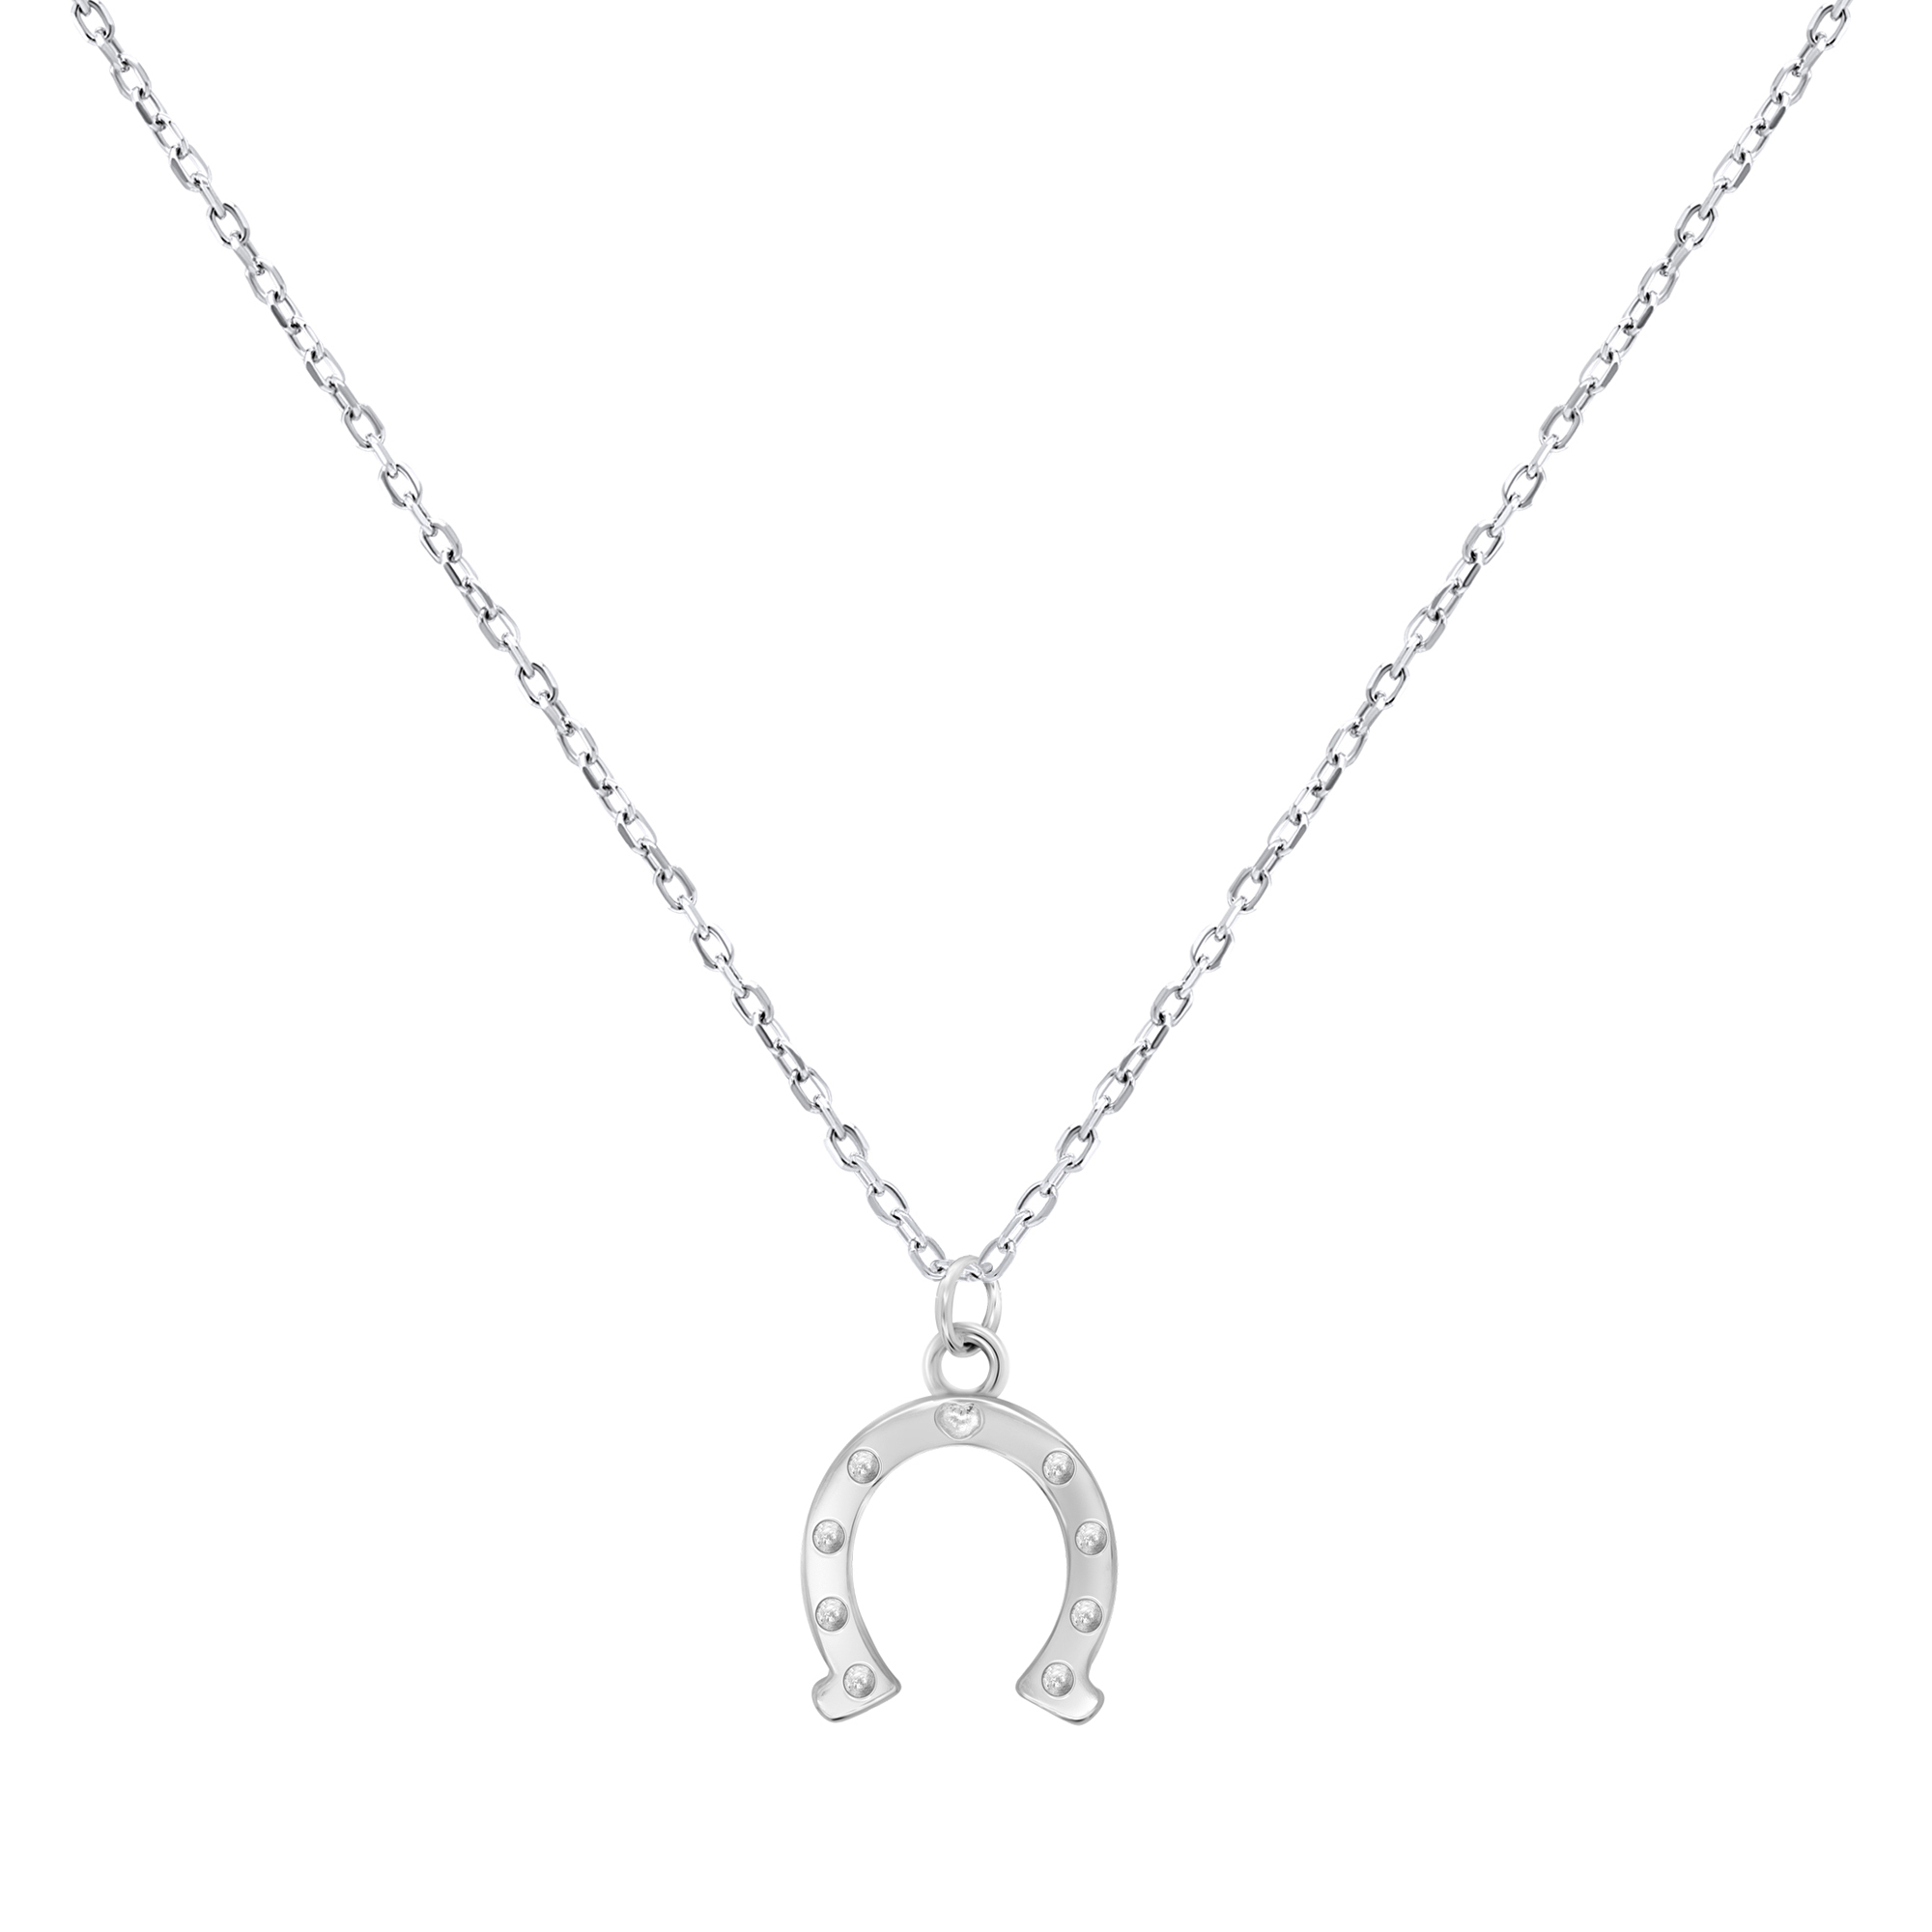 Brilio Silver Strieborný náhrdelník pre šťastie Podkova NCL66W (retiazka, prívesok)